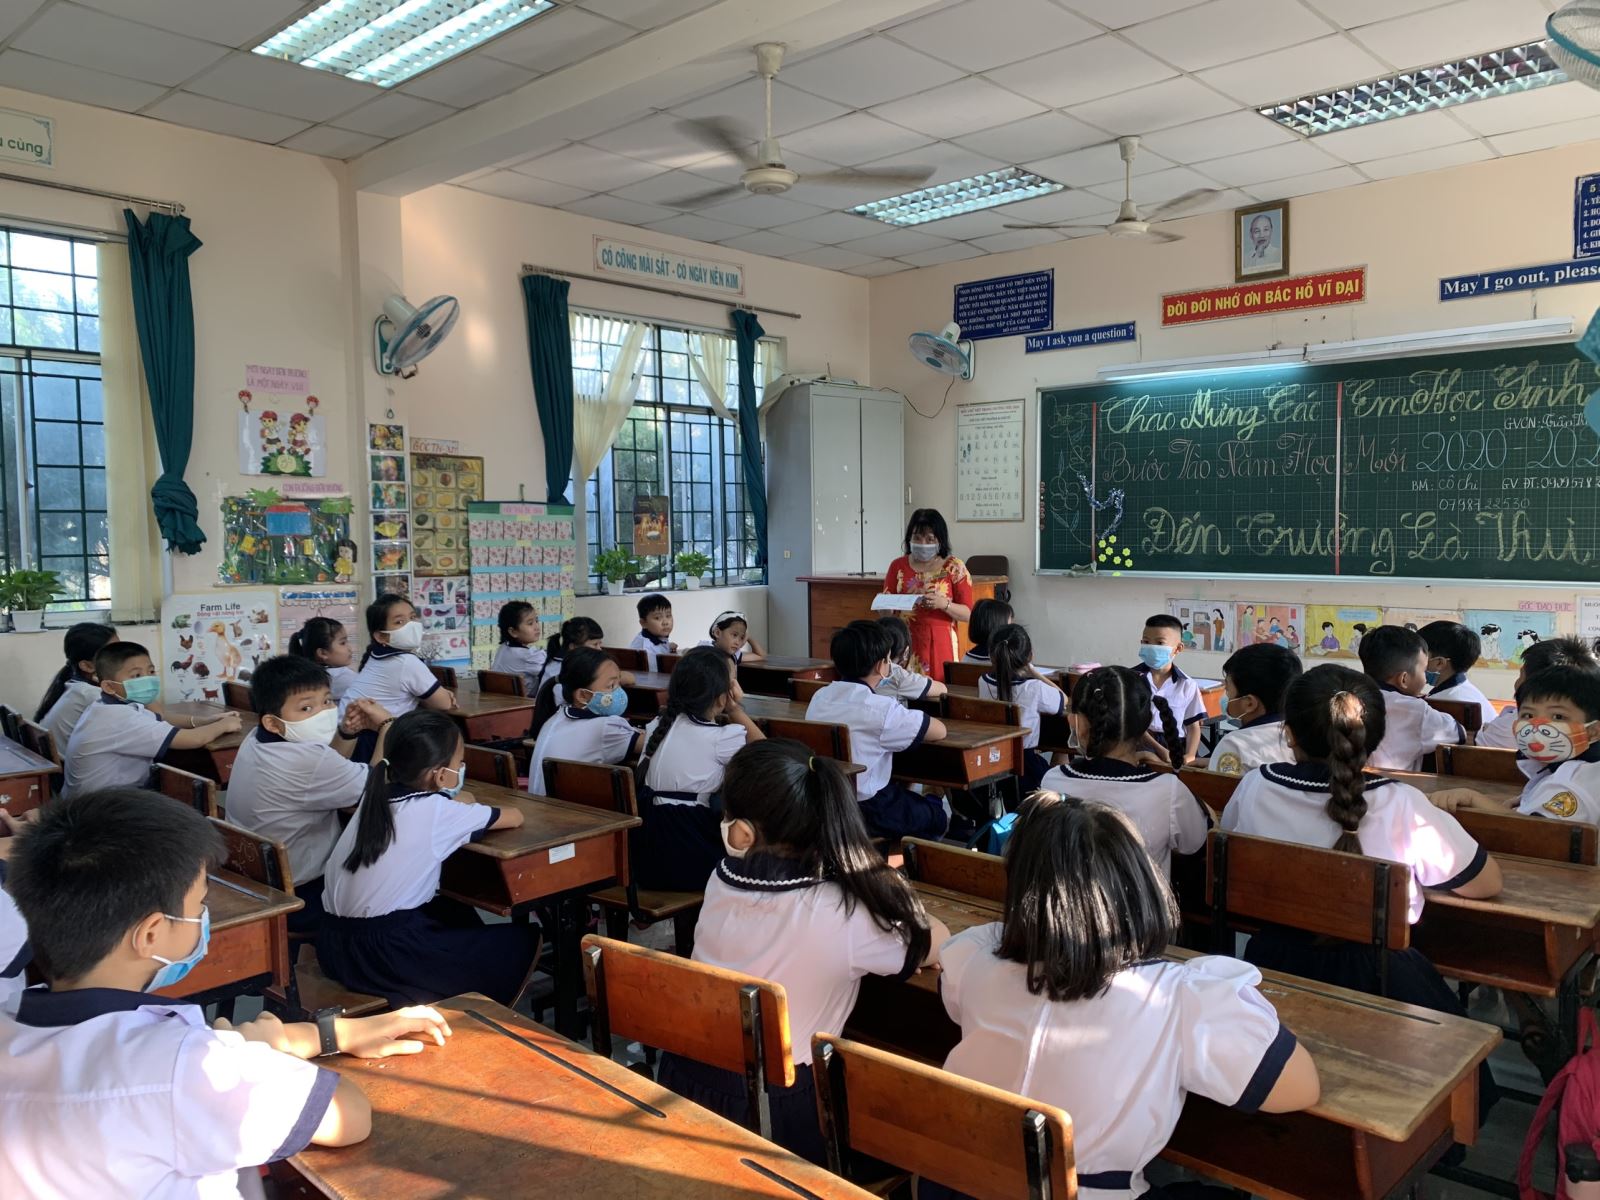 TP Hồ Chí Minh: Khó đảm bảo chỉ tiêu 300 phòng học/10.000 dân số trong độ tuổi đi học